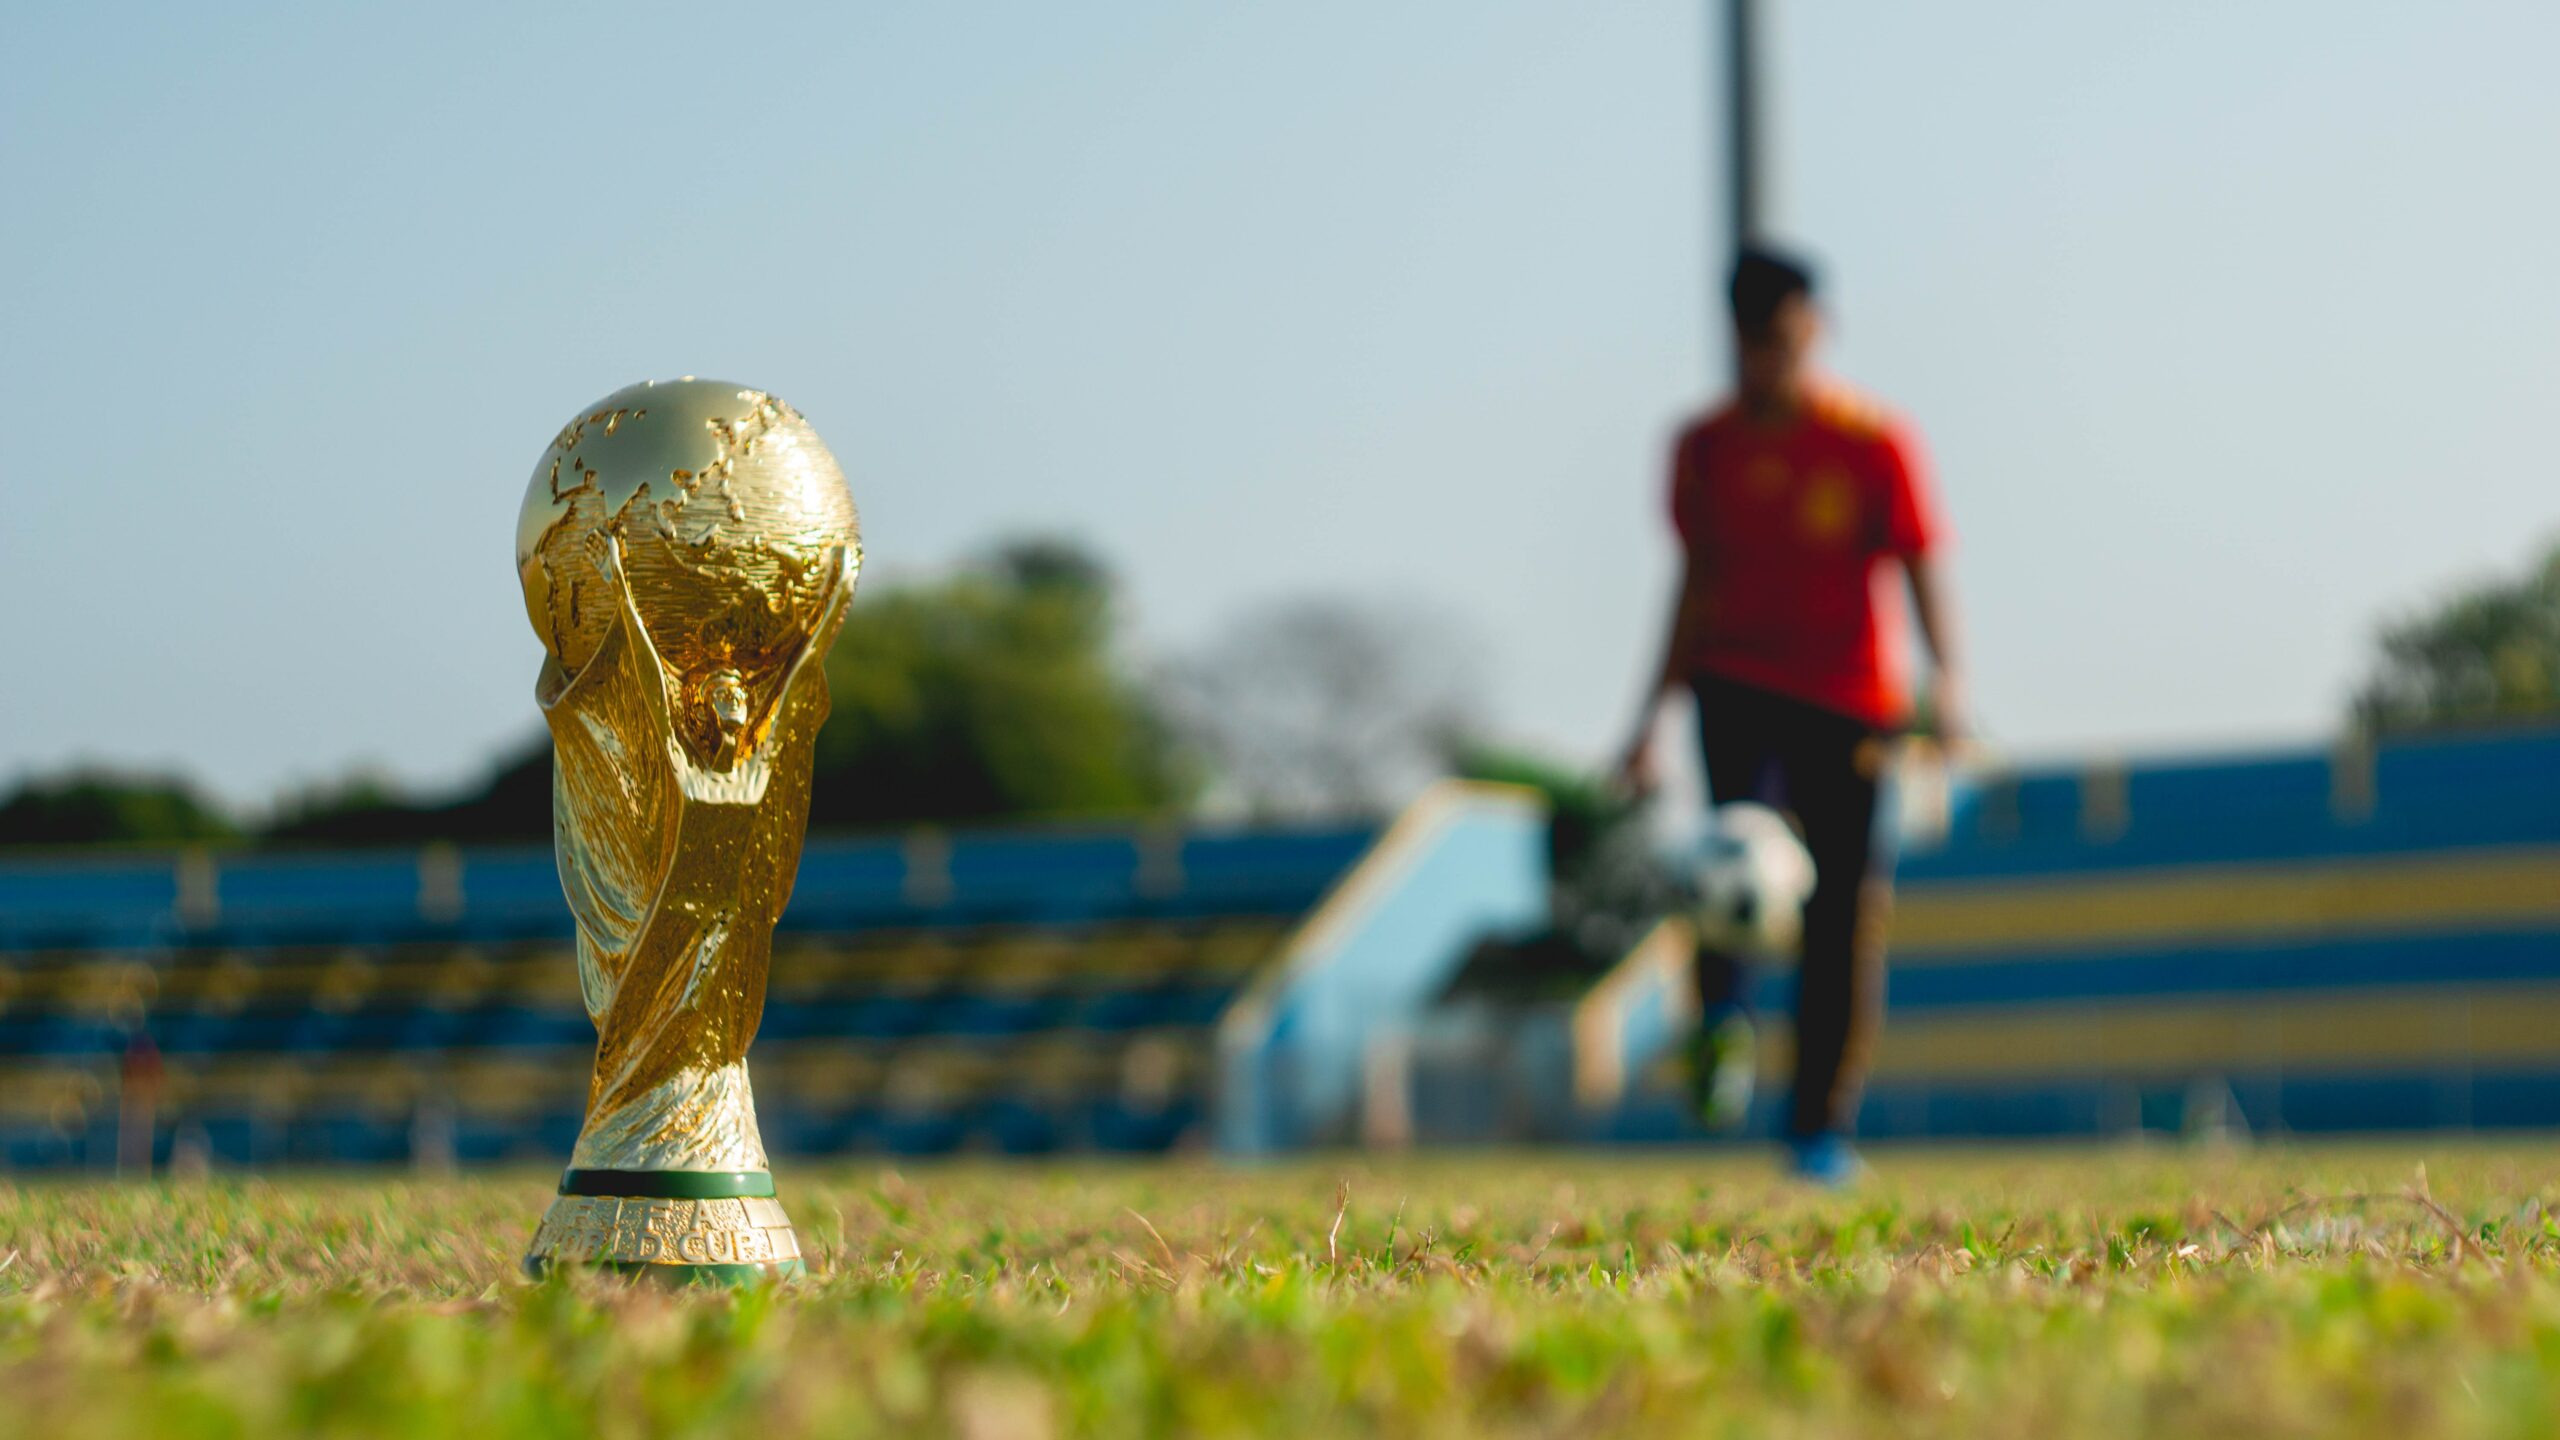 Grandes seleções estão jogando a Copa do Catar. Para você, quem vai ganhar a Copa do Mundo de 2022? Faça suas apostas com a Apostaquente!